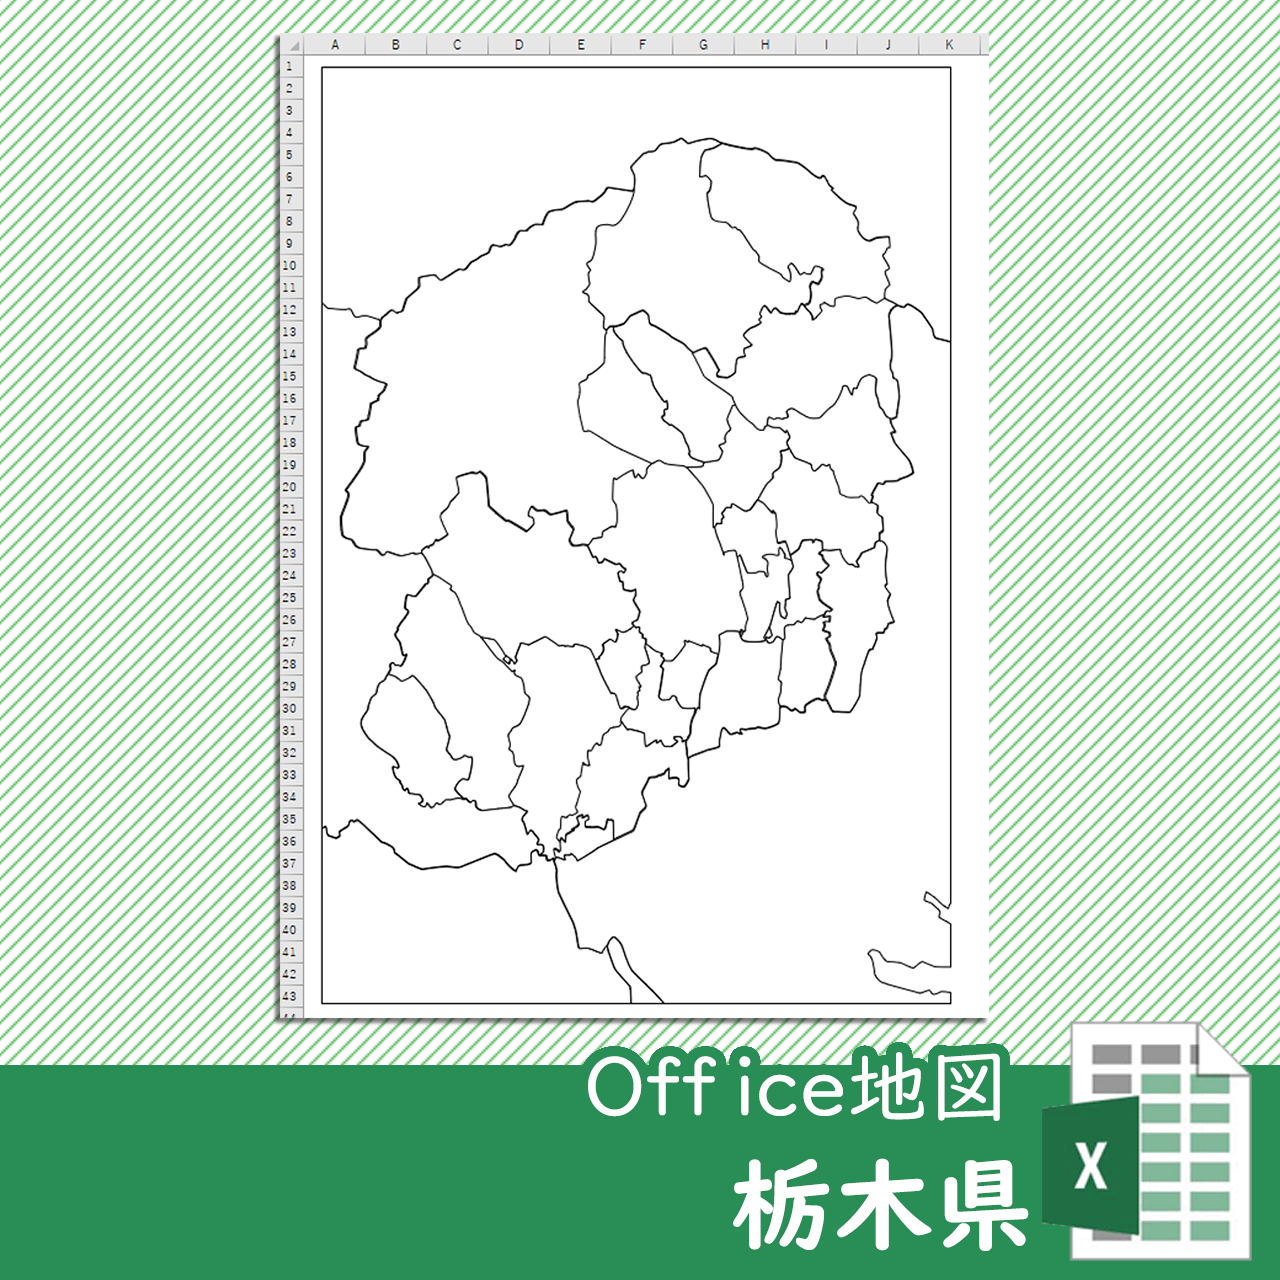 栃木県のOffice地図のサムネイル